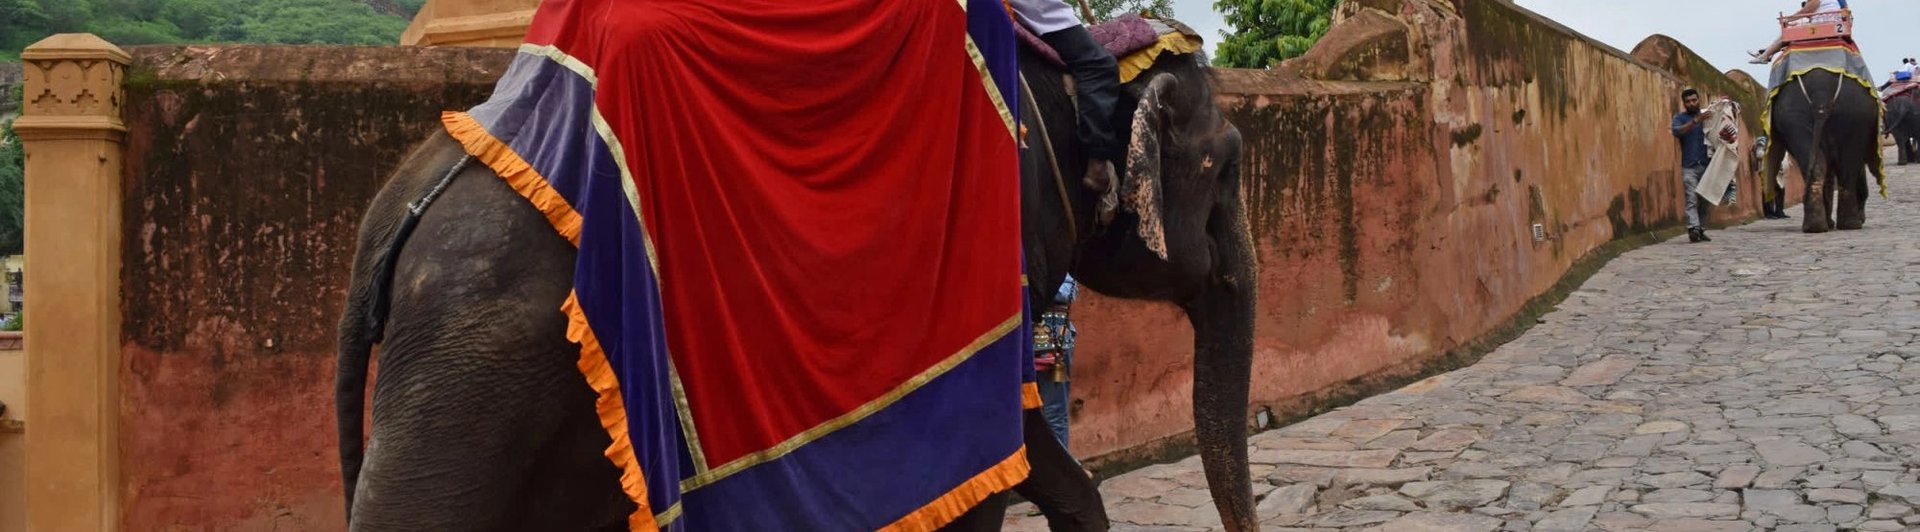 Elefantes cargando turistas sobre sus espaldas en Amer Fort, India.